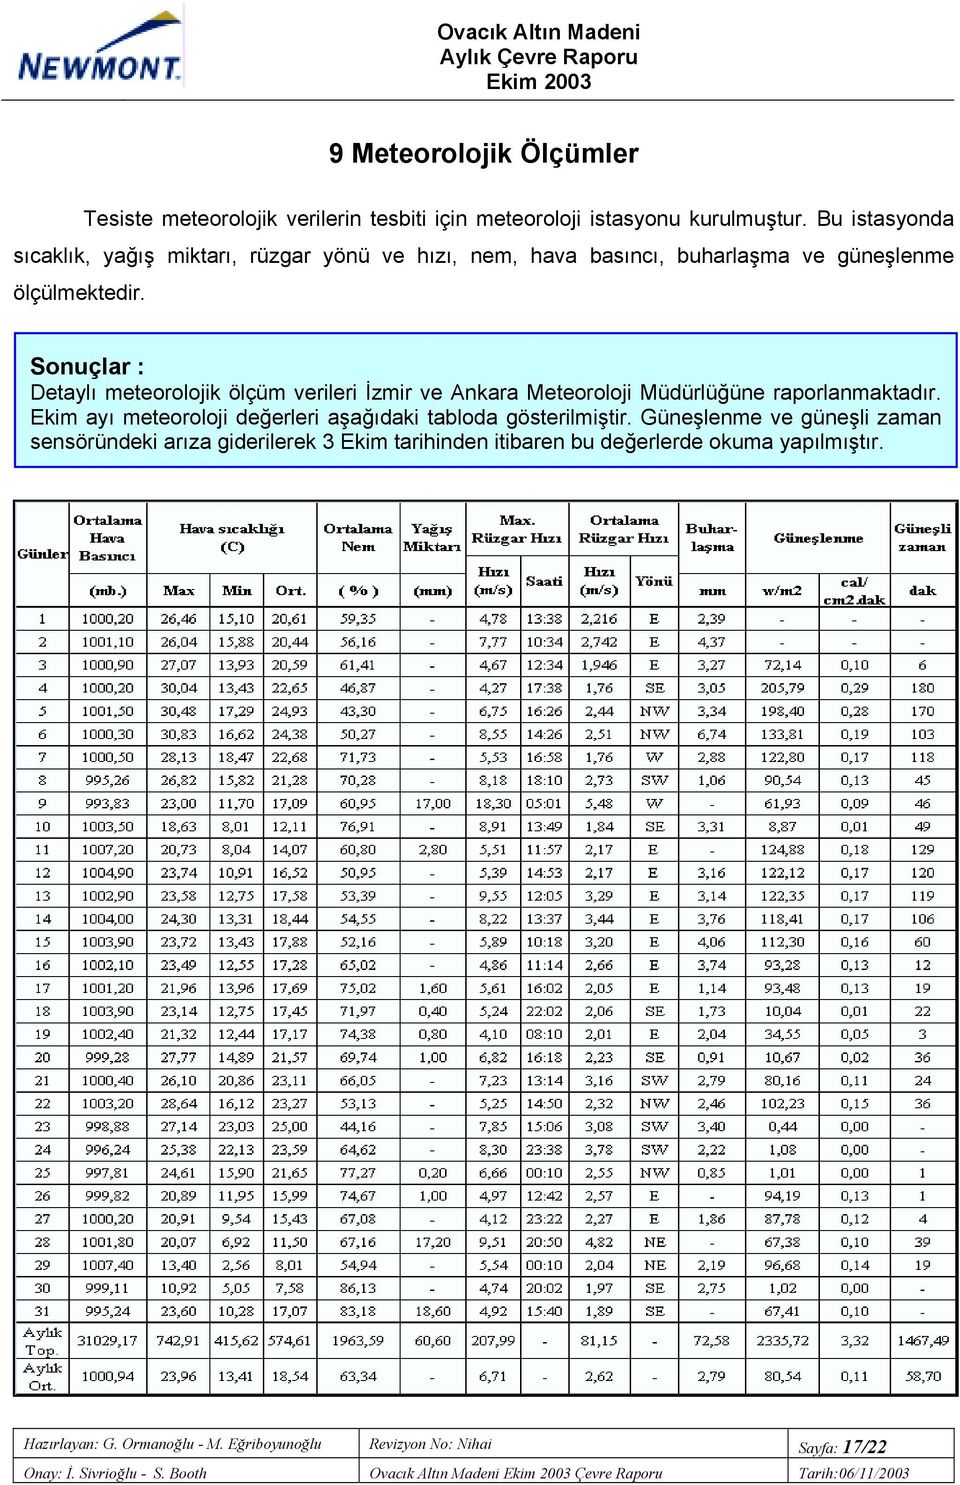 Sonuçlar : Detaylõ meteorolojik ölçüm verileri İzmir ve Ankara Meteoroloji Müdürlüğüne raporlanmaktadõr.